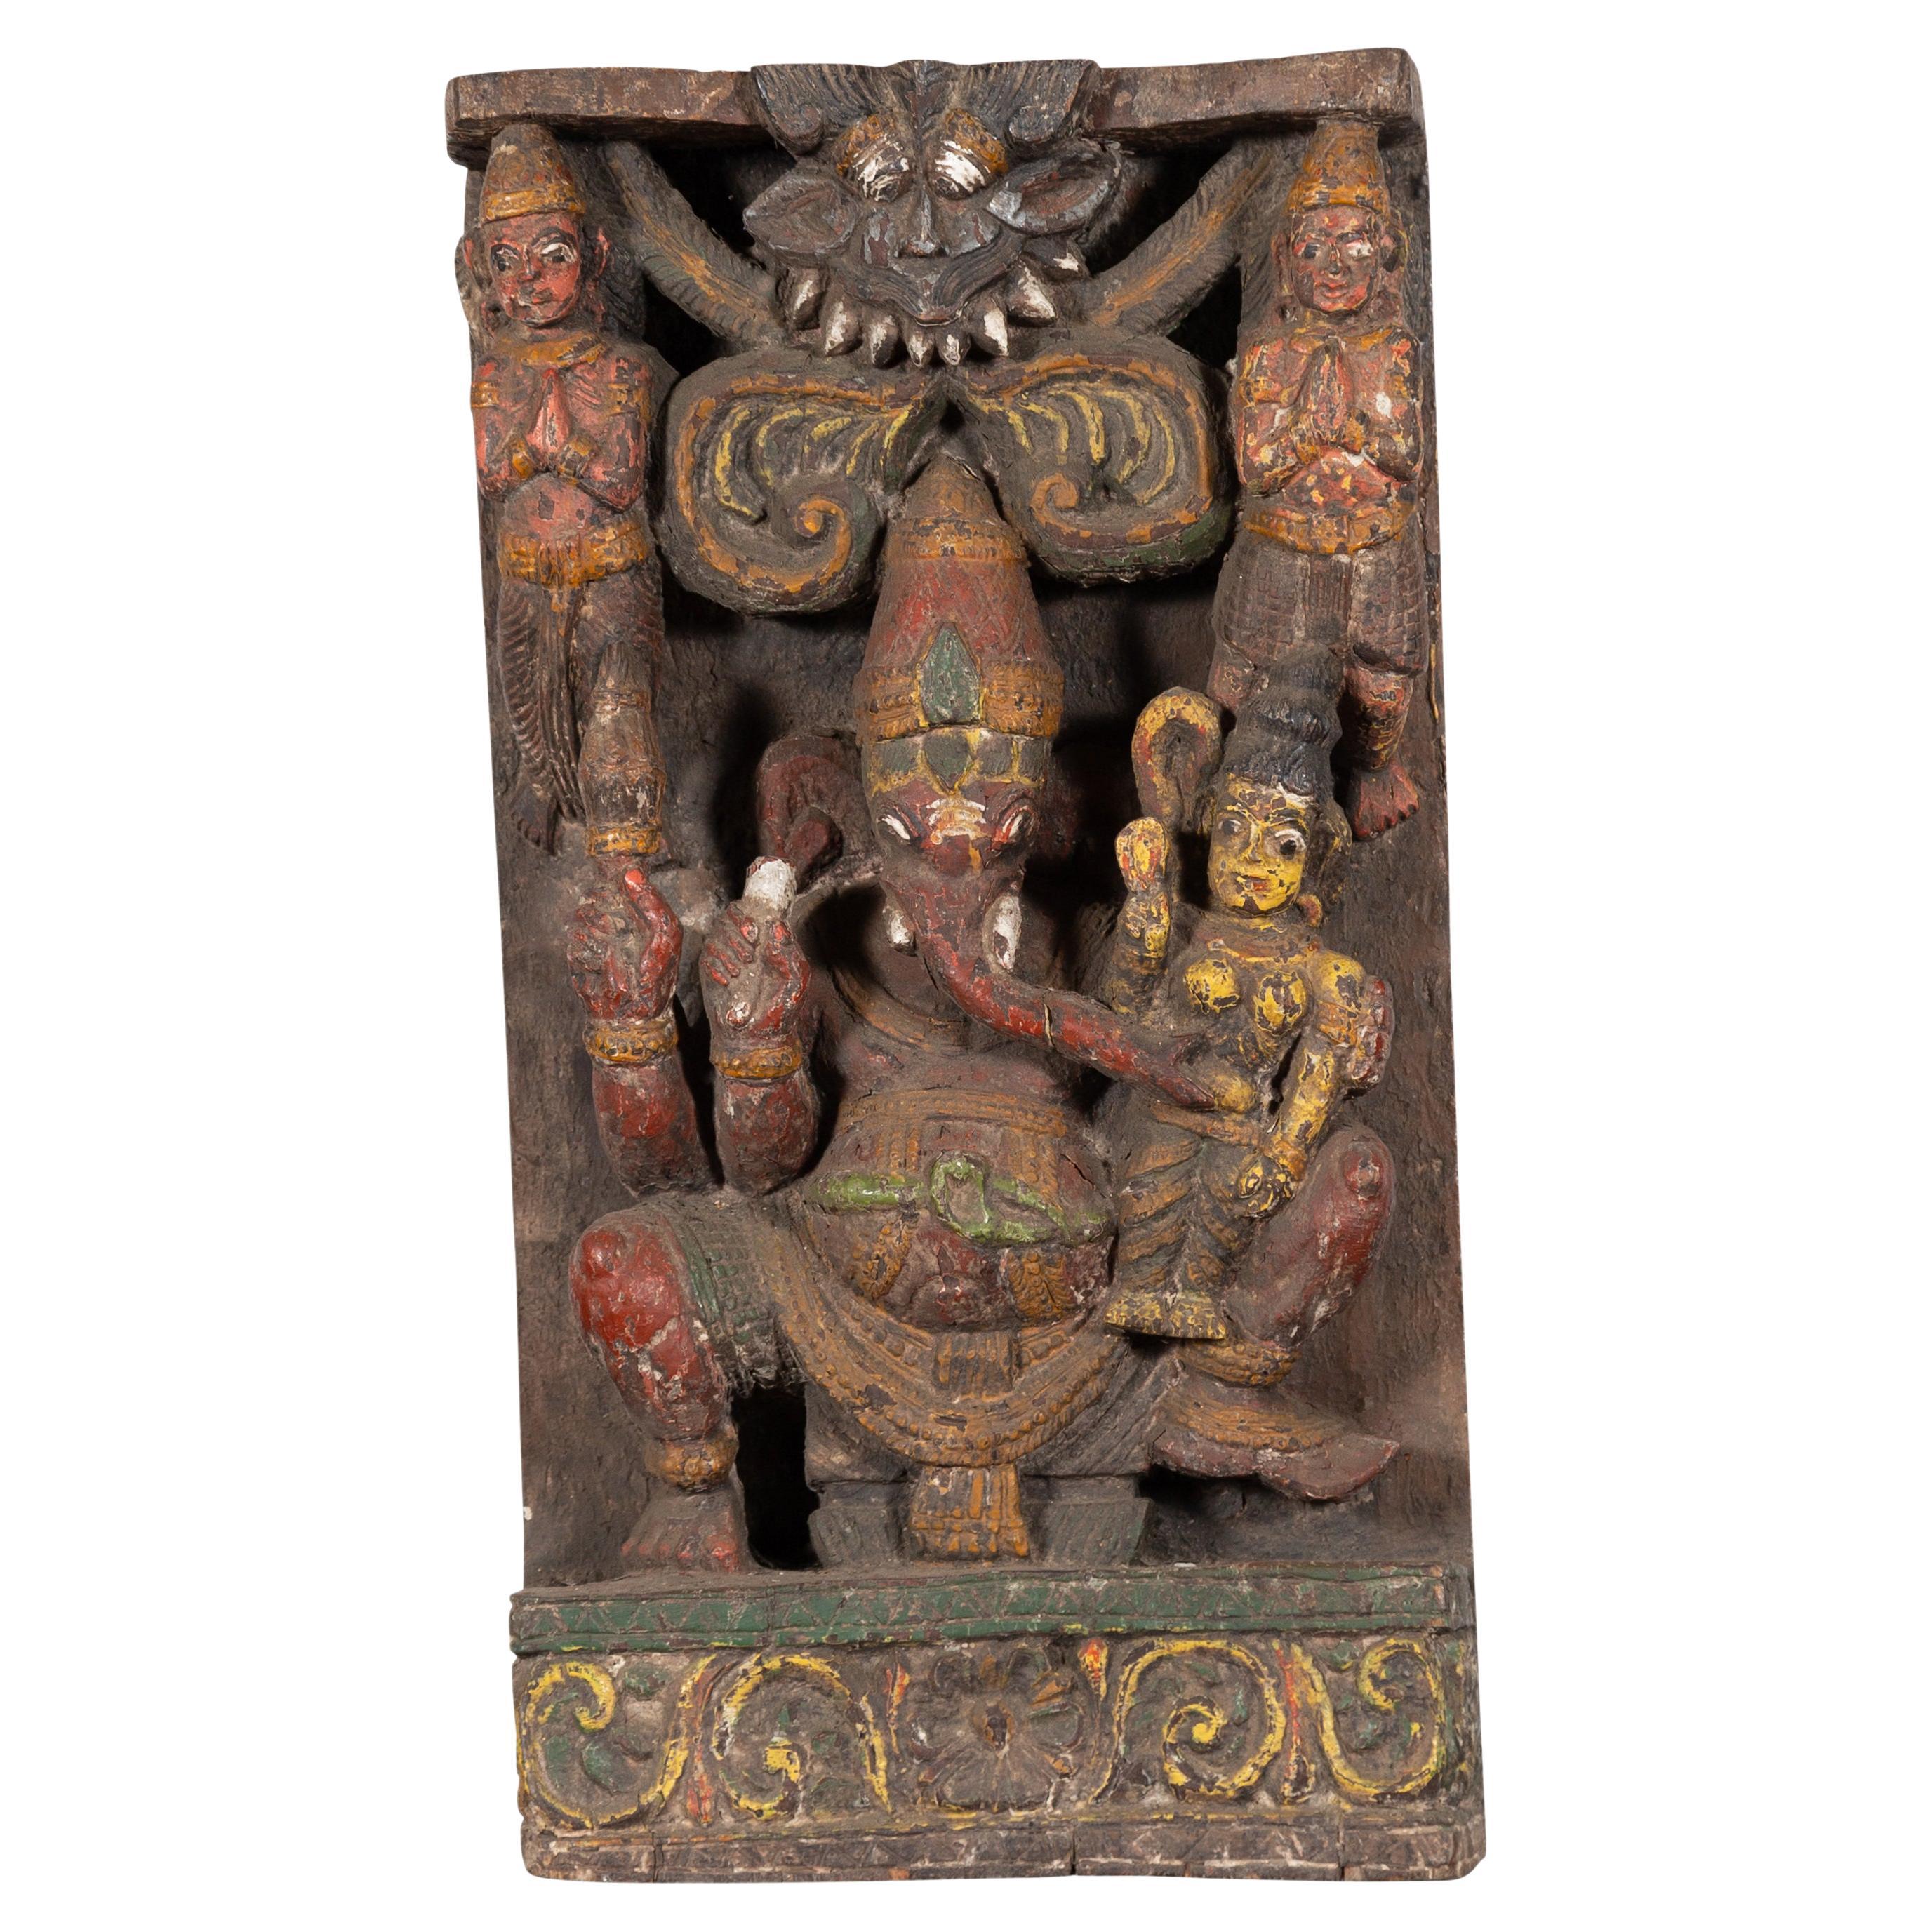 Indische mehrfarbige Tempelschnitzerei des 19. Jahrhunderts, die Ganesha mitsort darstellt